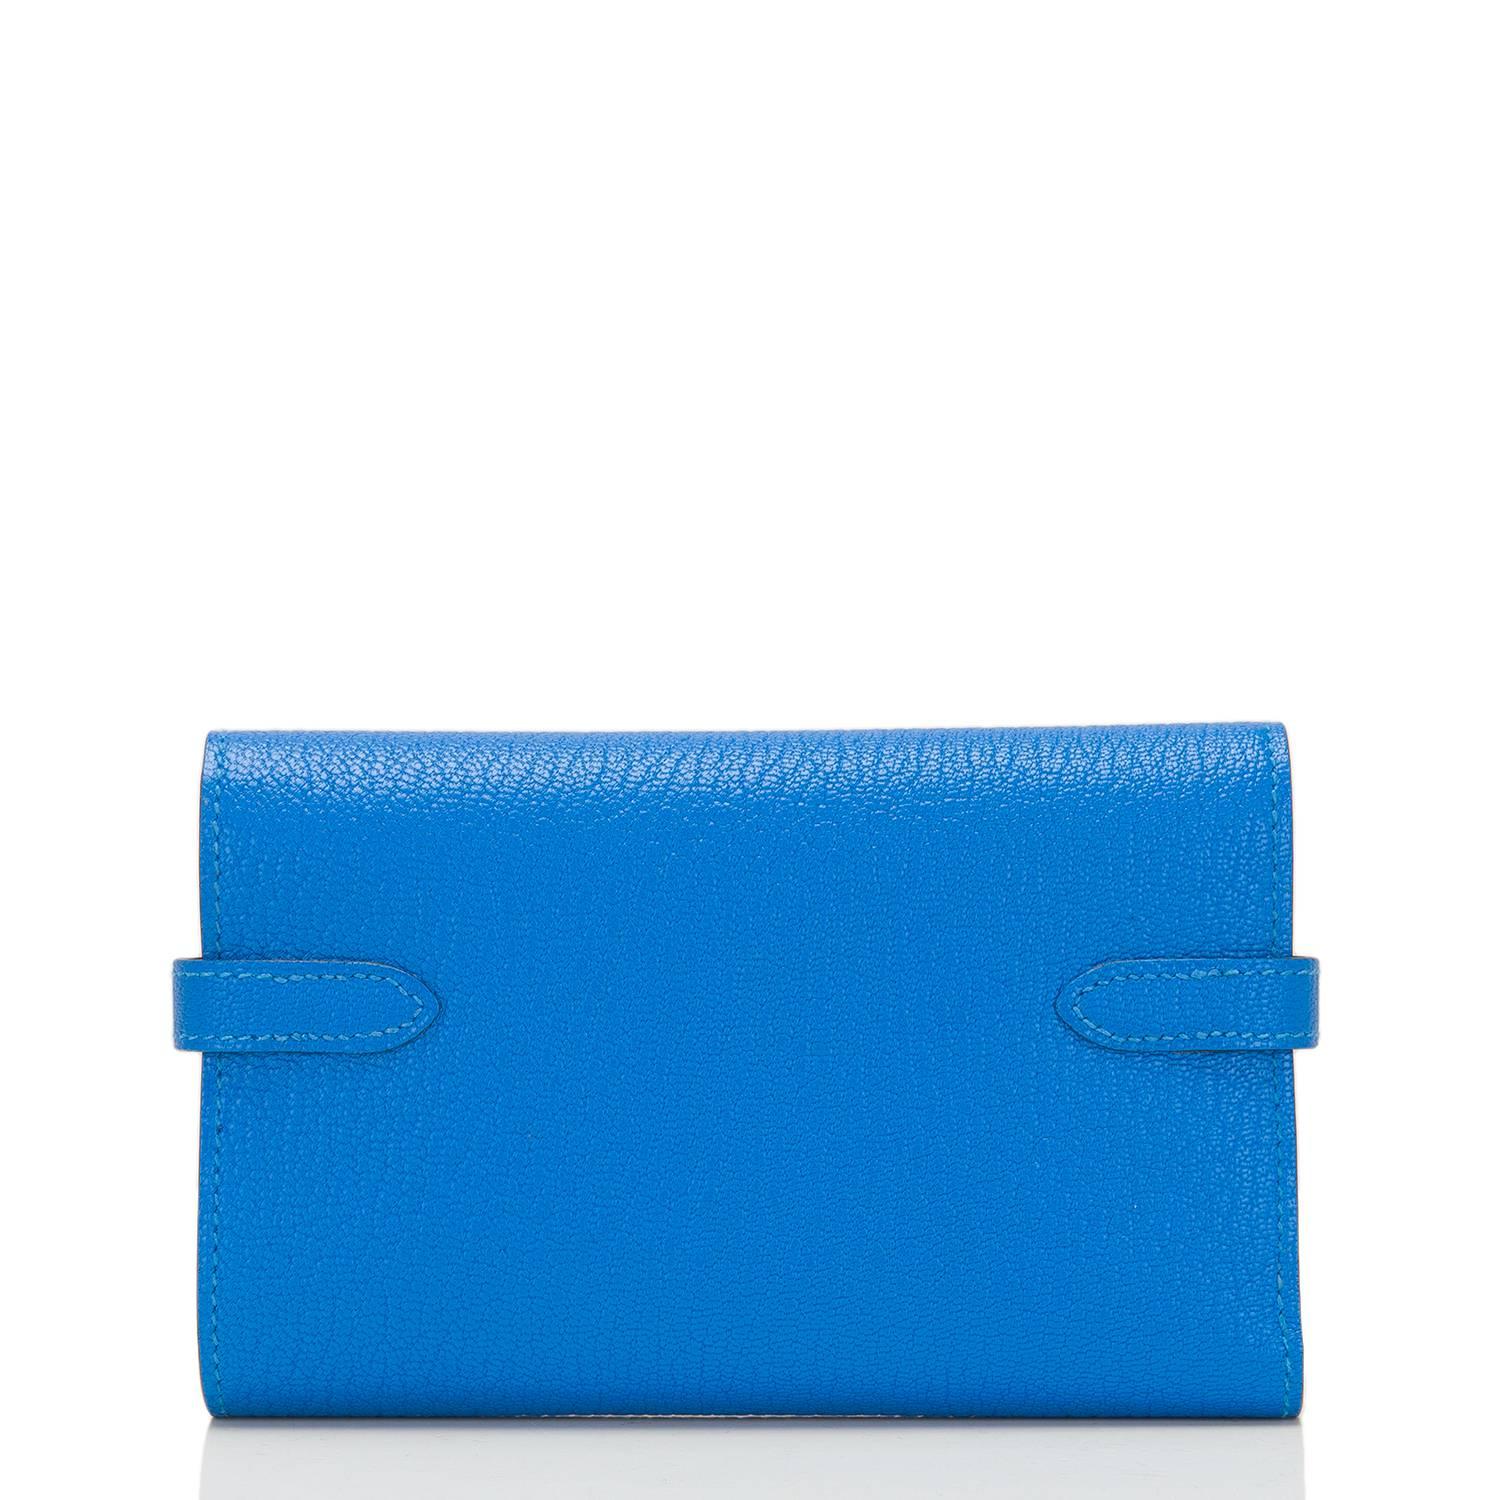 hydra wallet using trust wallet